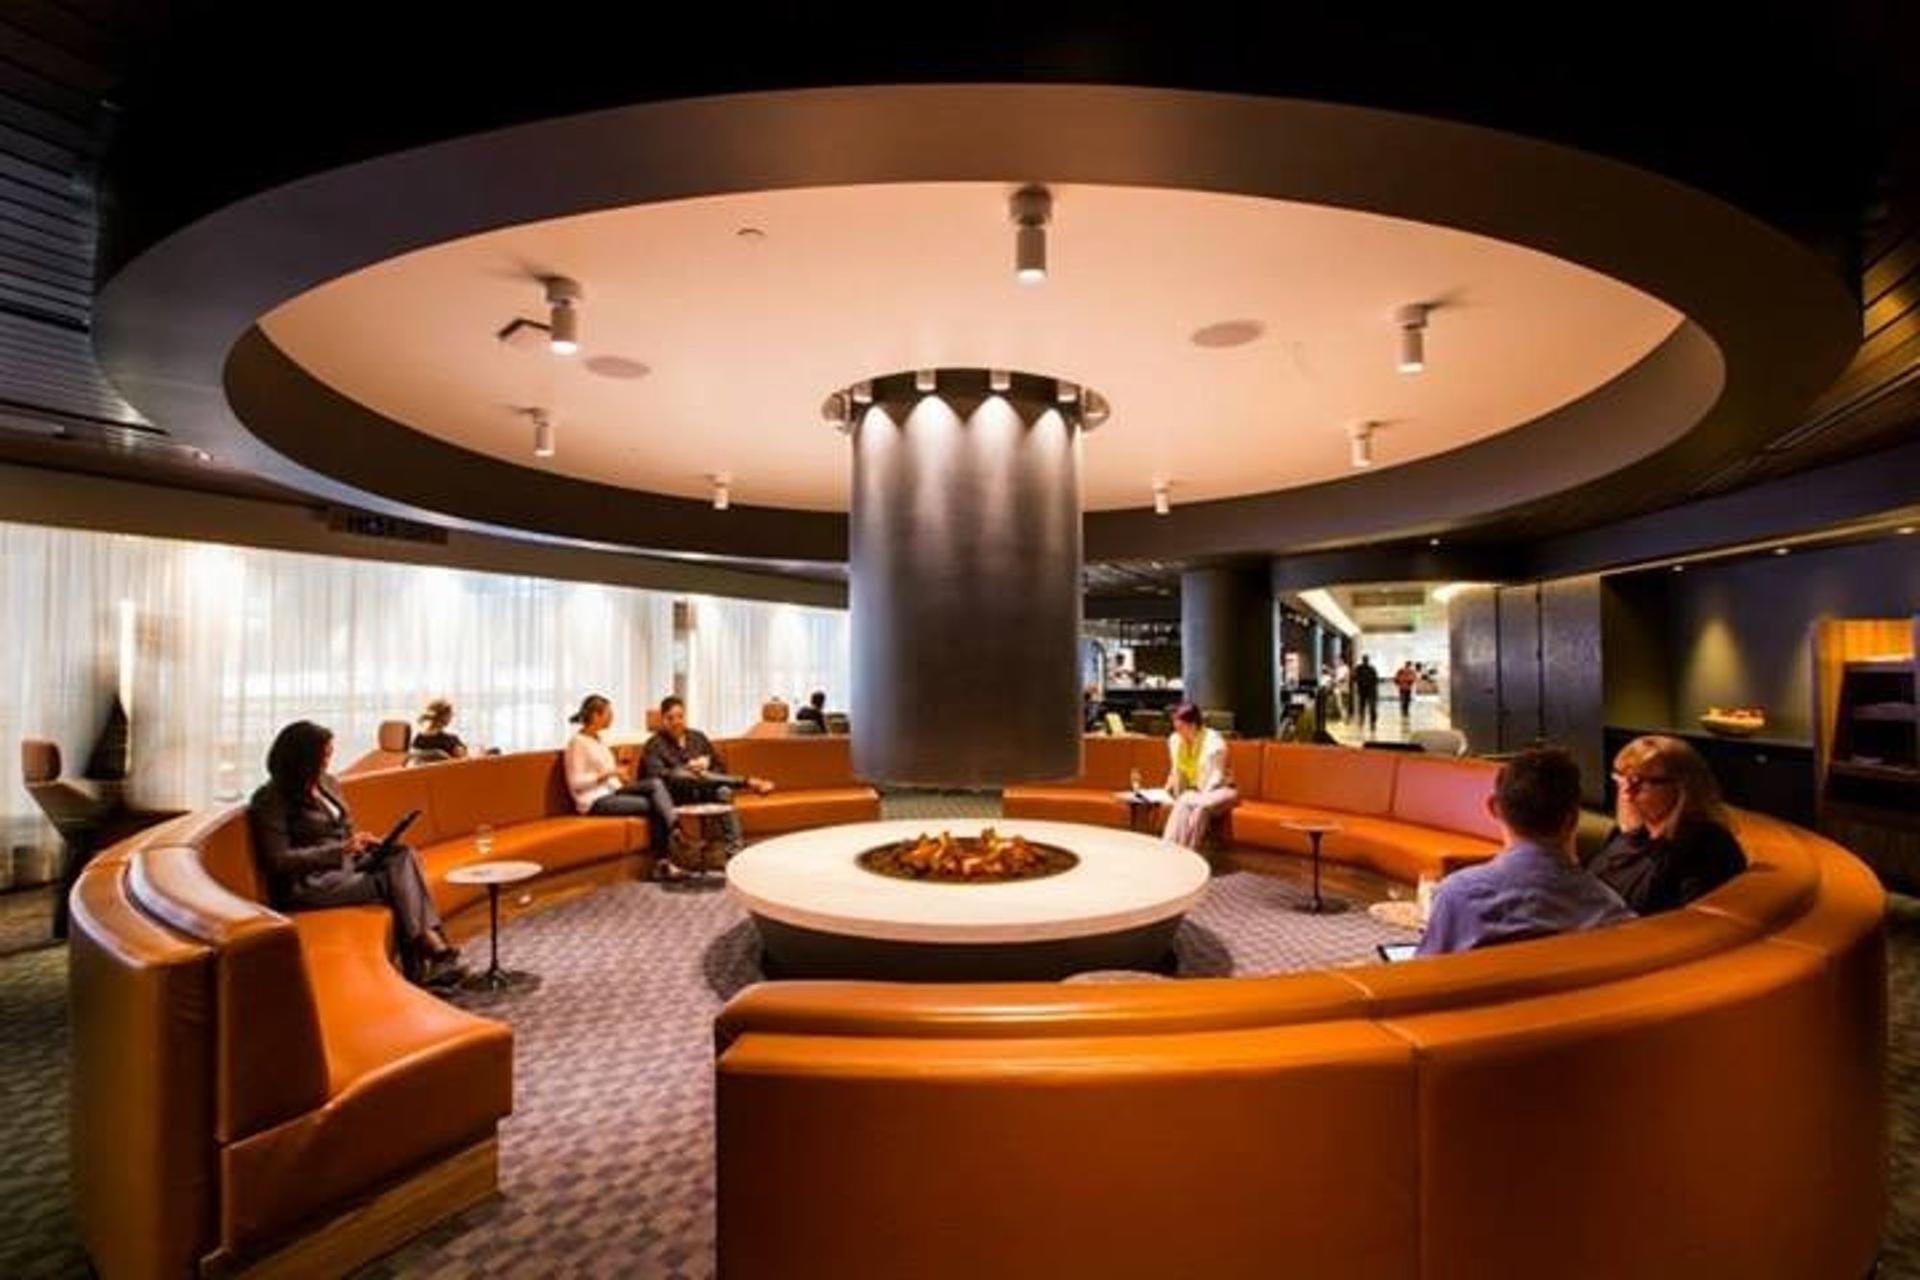 oneworld International Business Lounge image 4 of 21